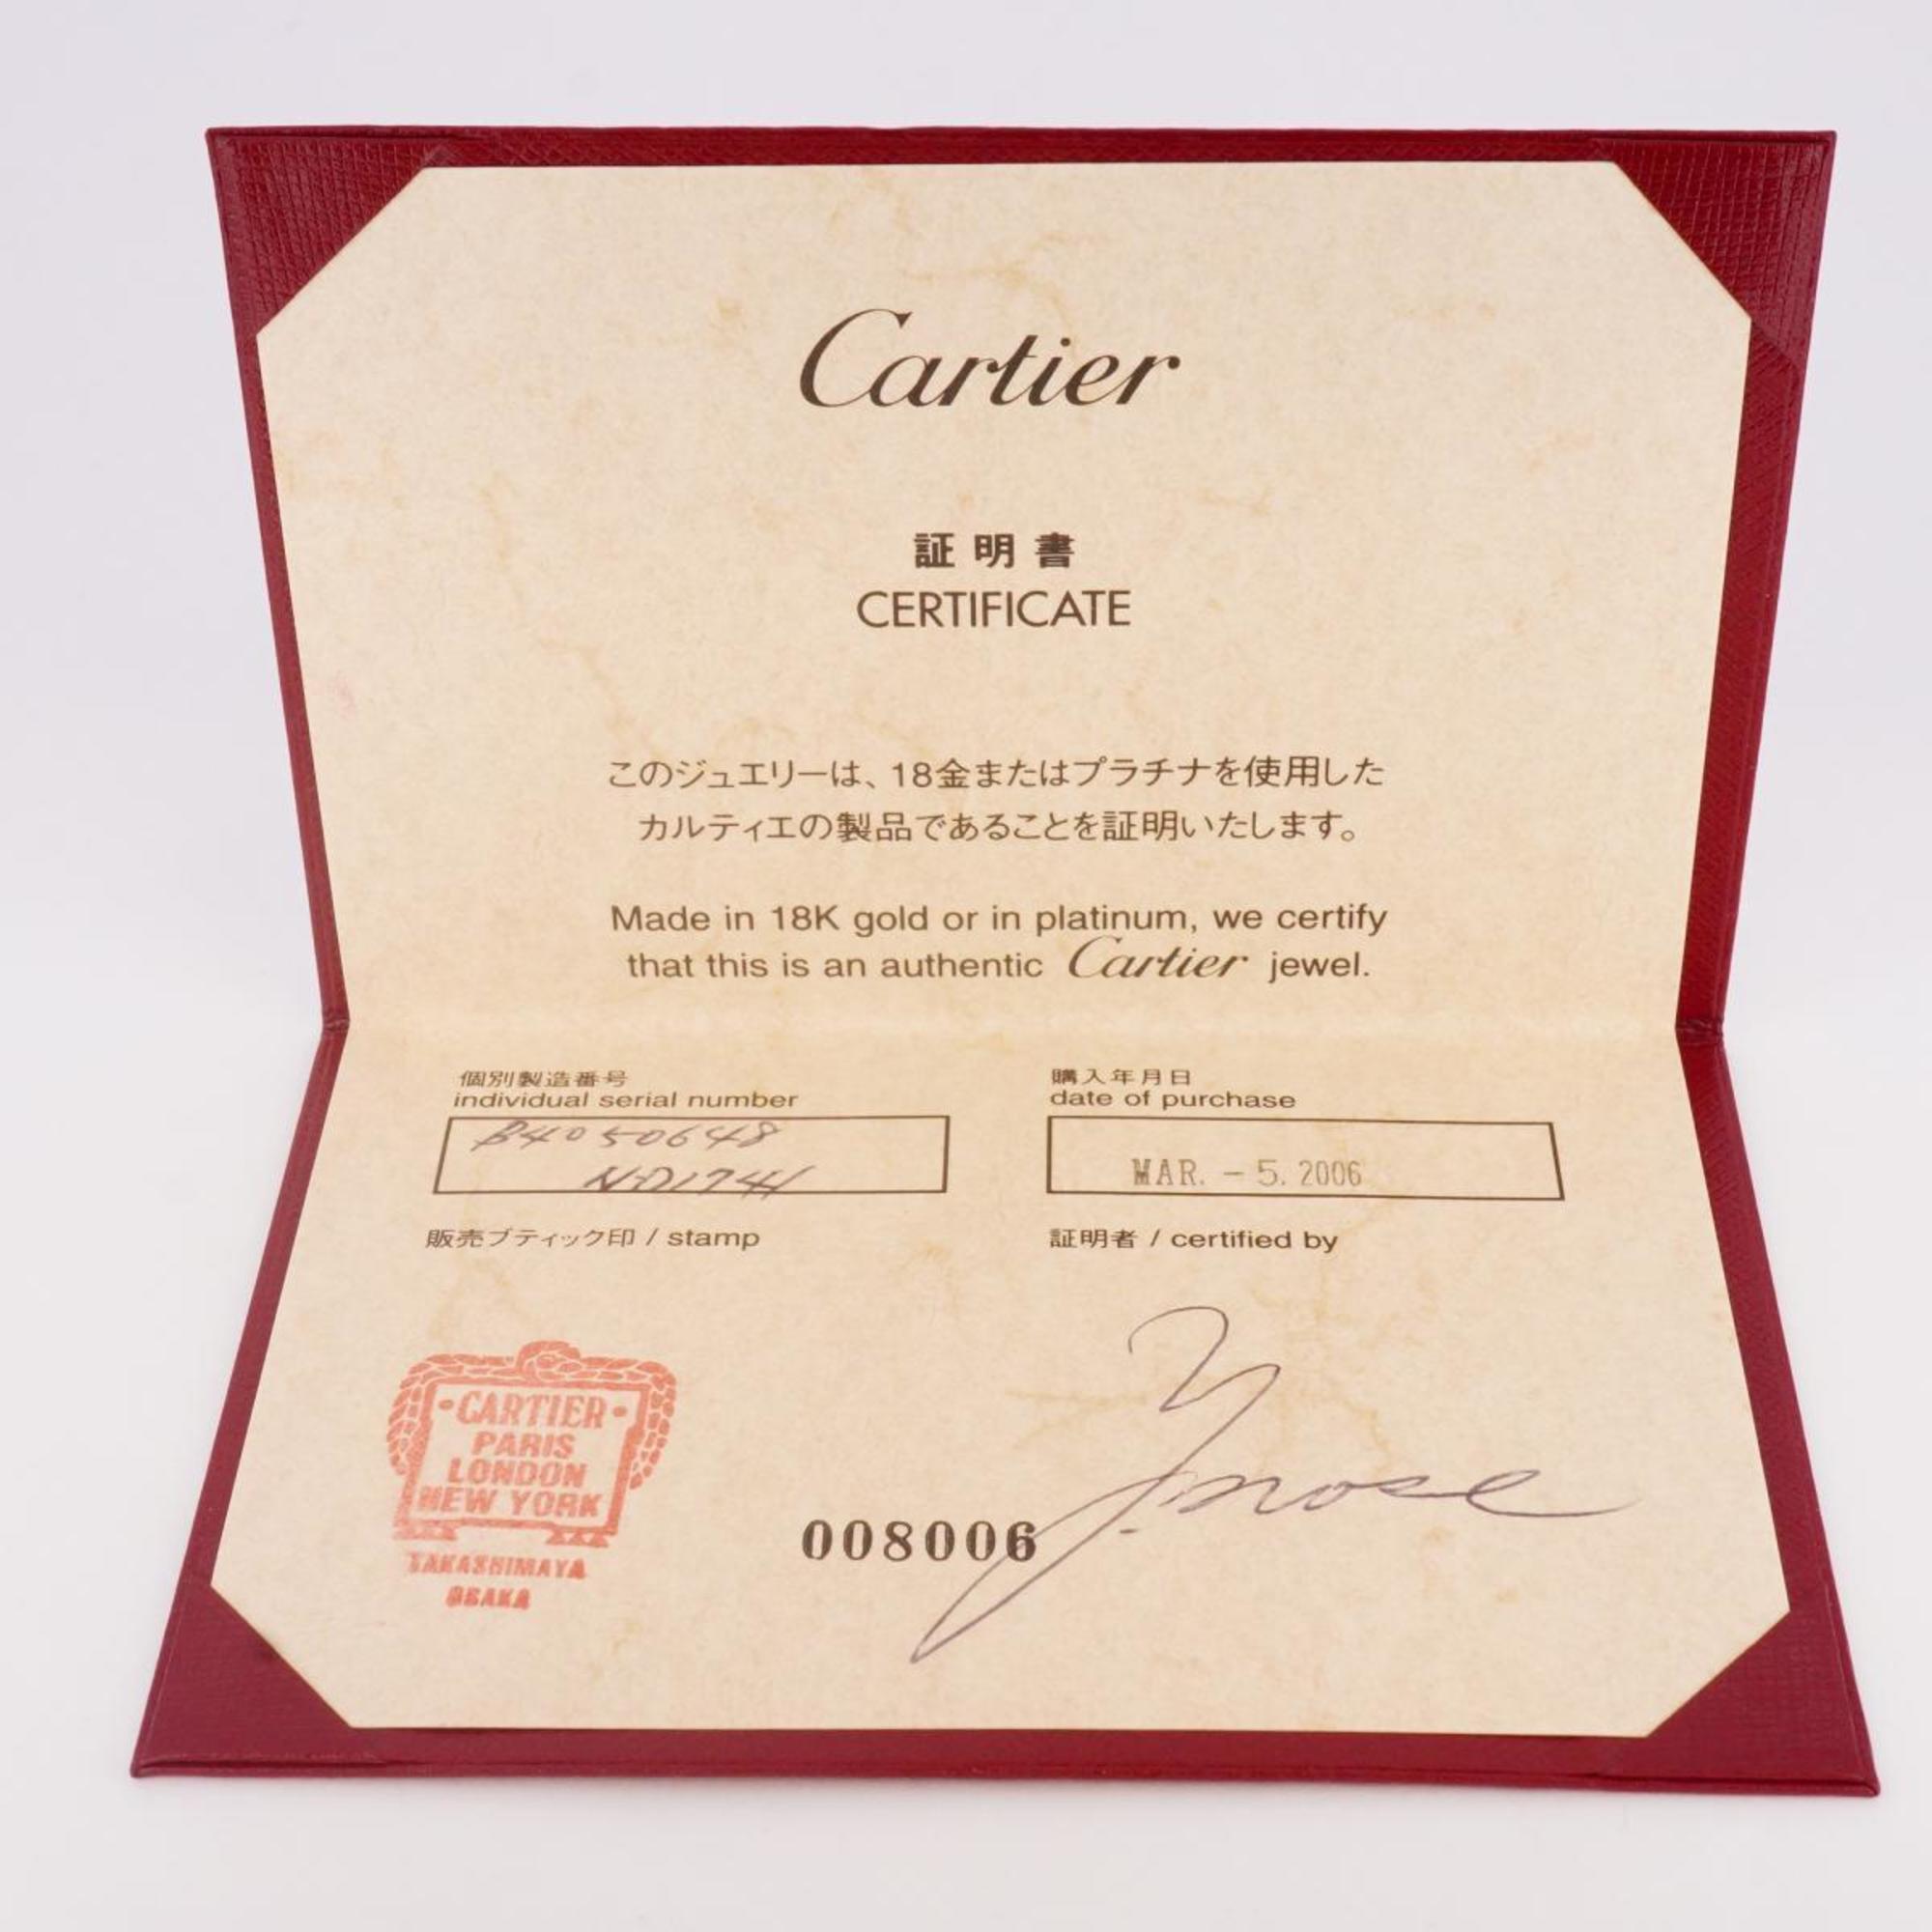 カルティエ(Cartier) カルティエ リング ラブ フルダイヤ ダイヤモンド K18WG ホワイトゴールド  レディース